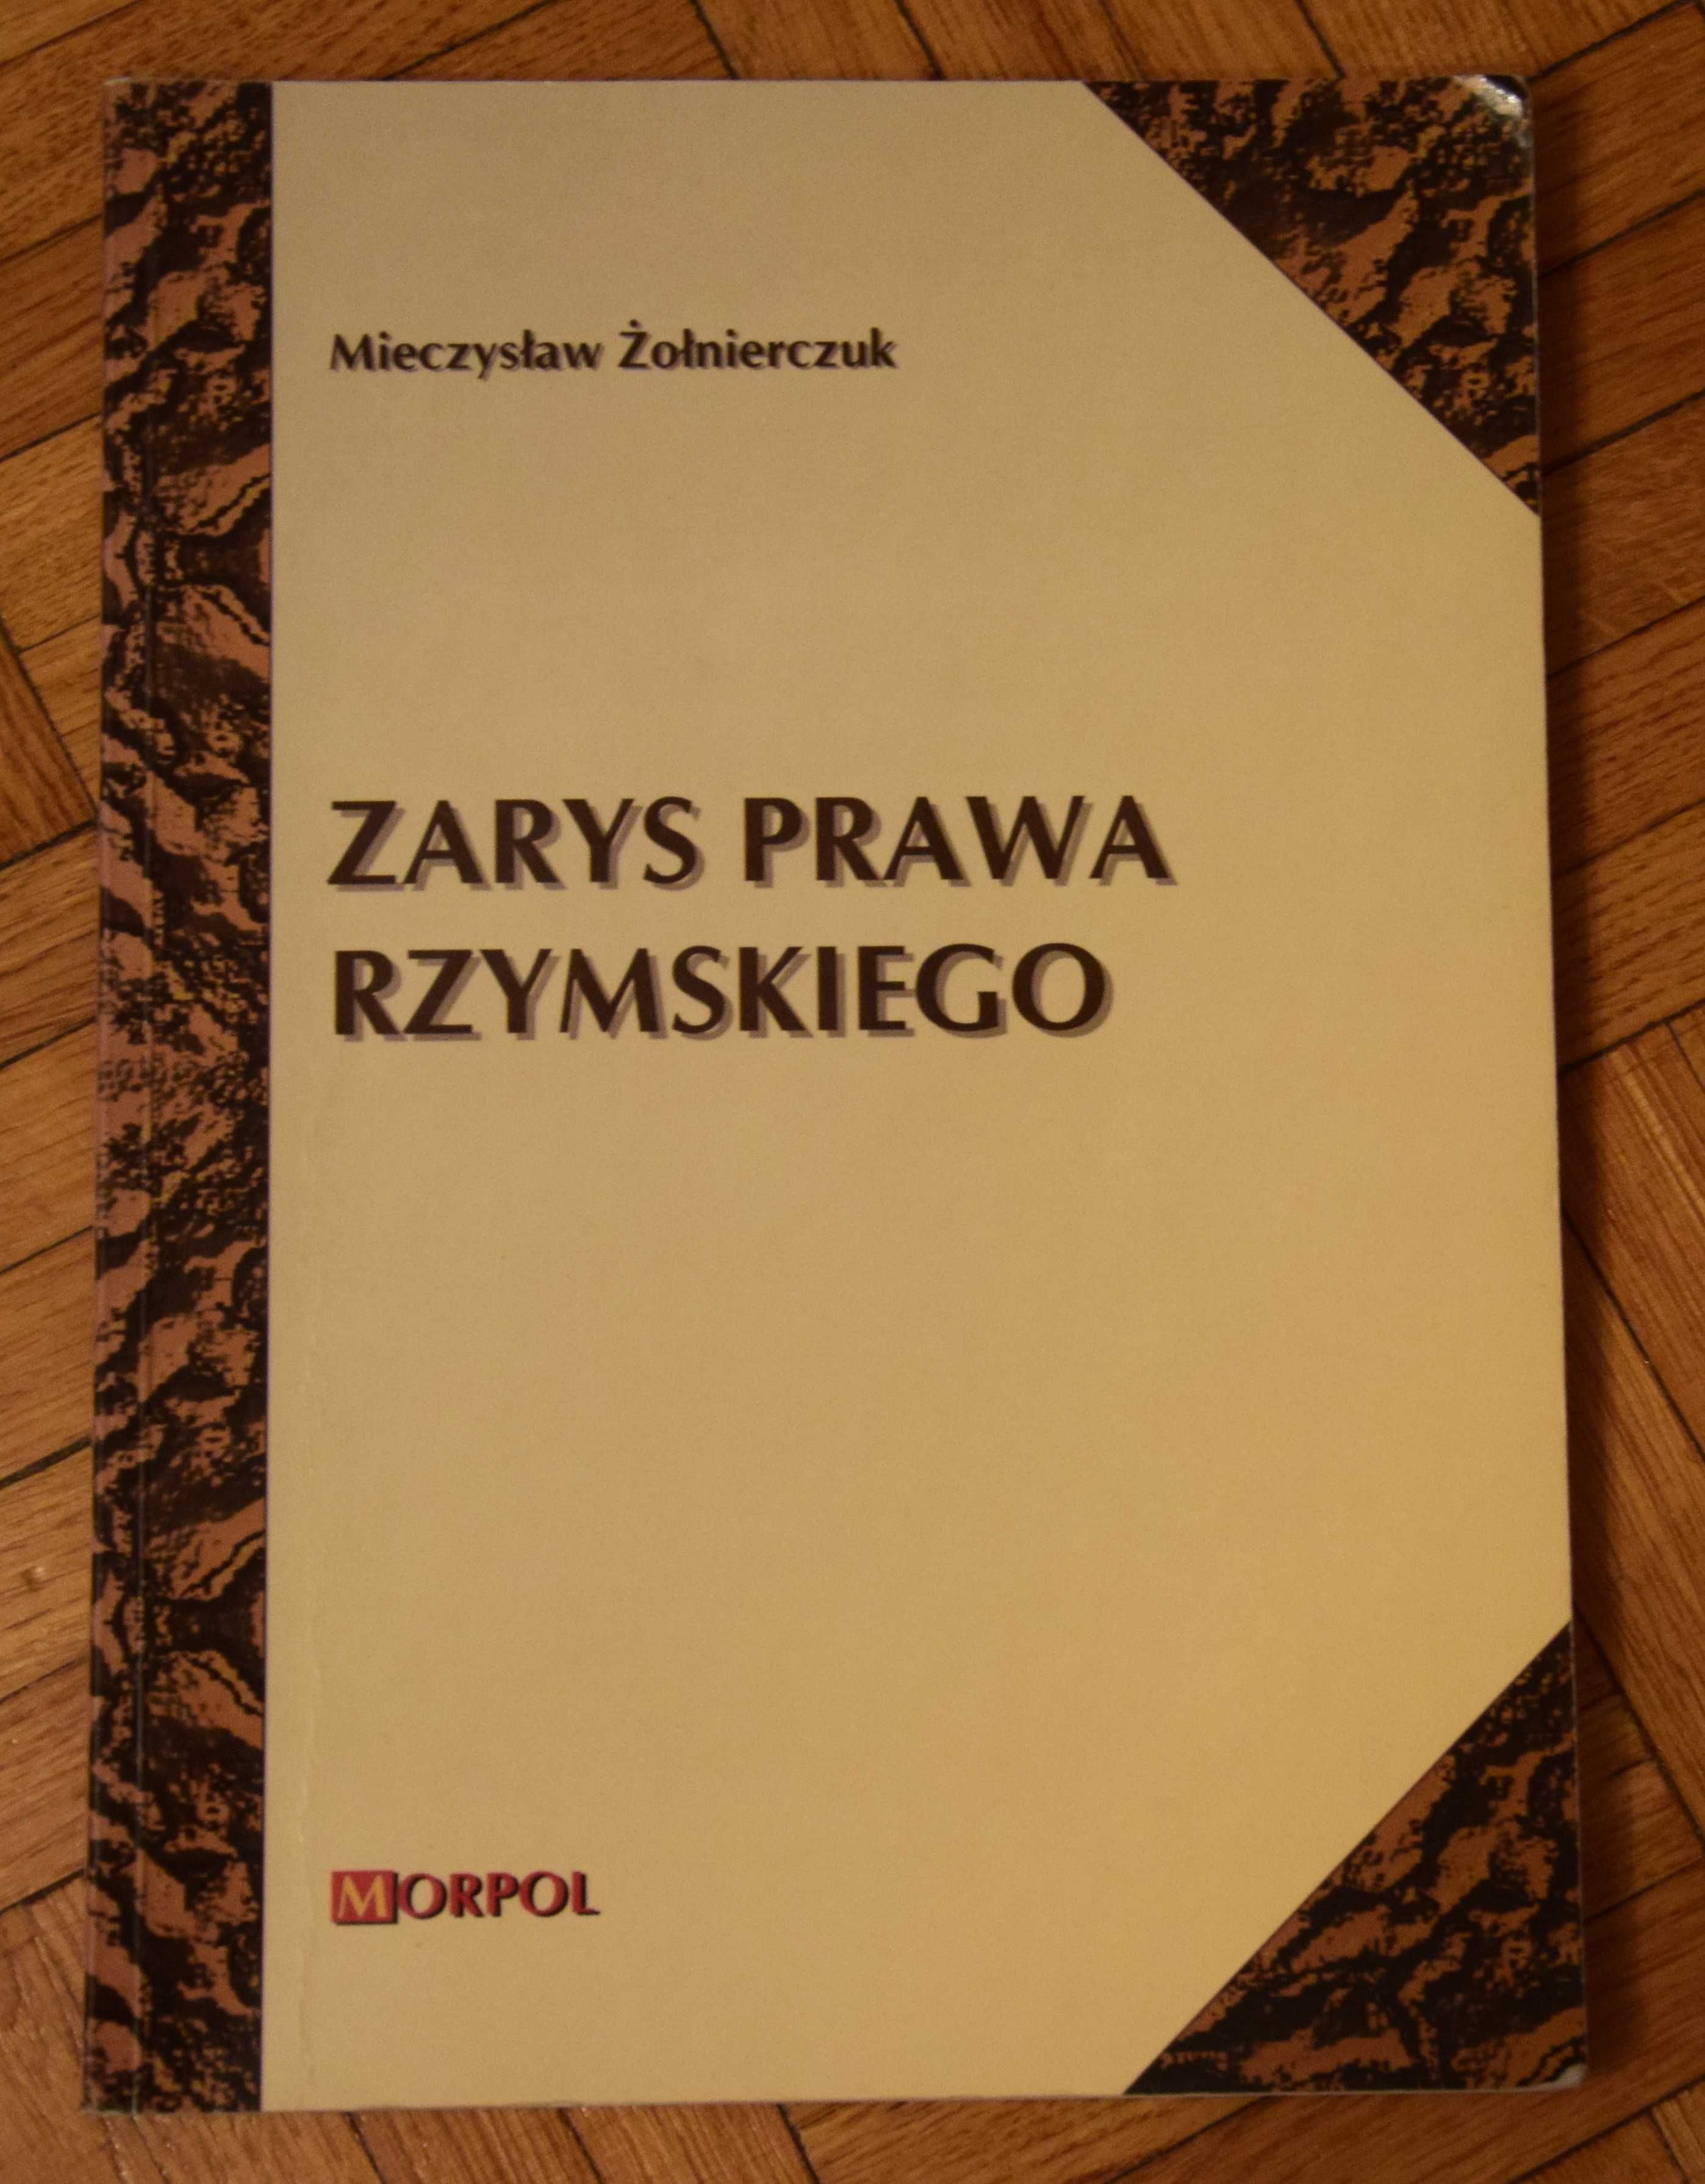 Zarys Prawa Rzymskiego, Mieczysław Żołnierczuk